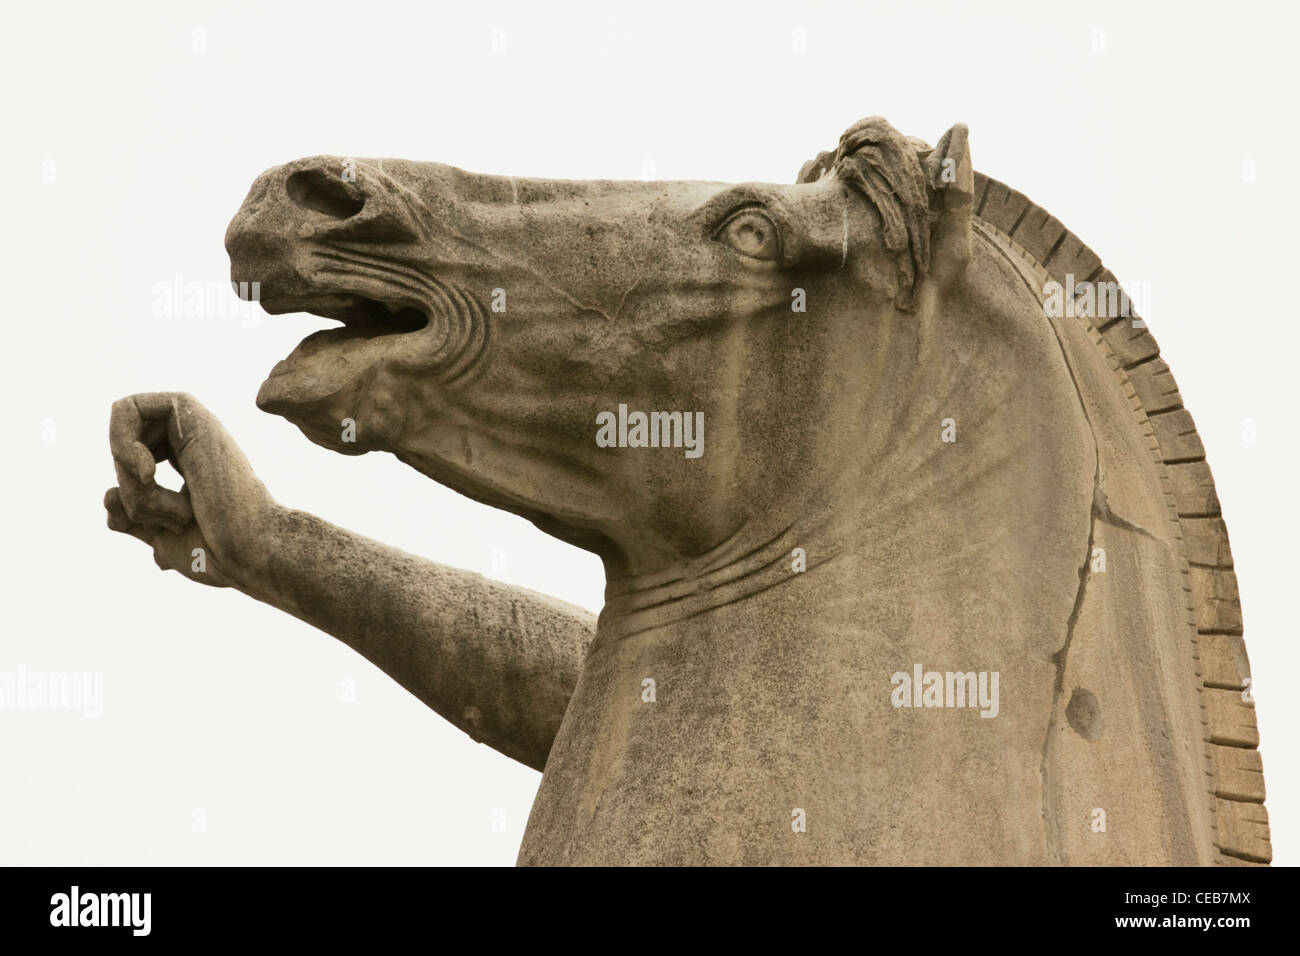 Le cheval de Troie statue de pierre à Rome, Italie Banque D'Images